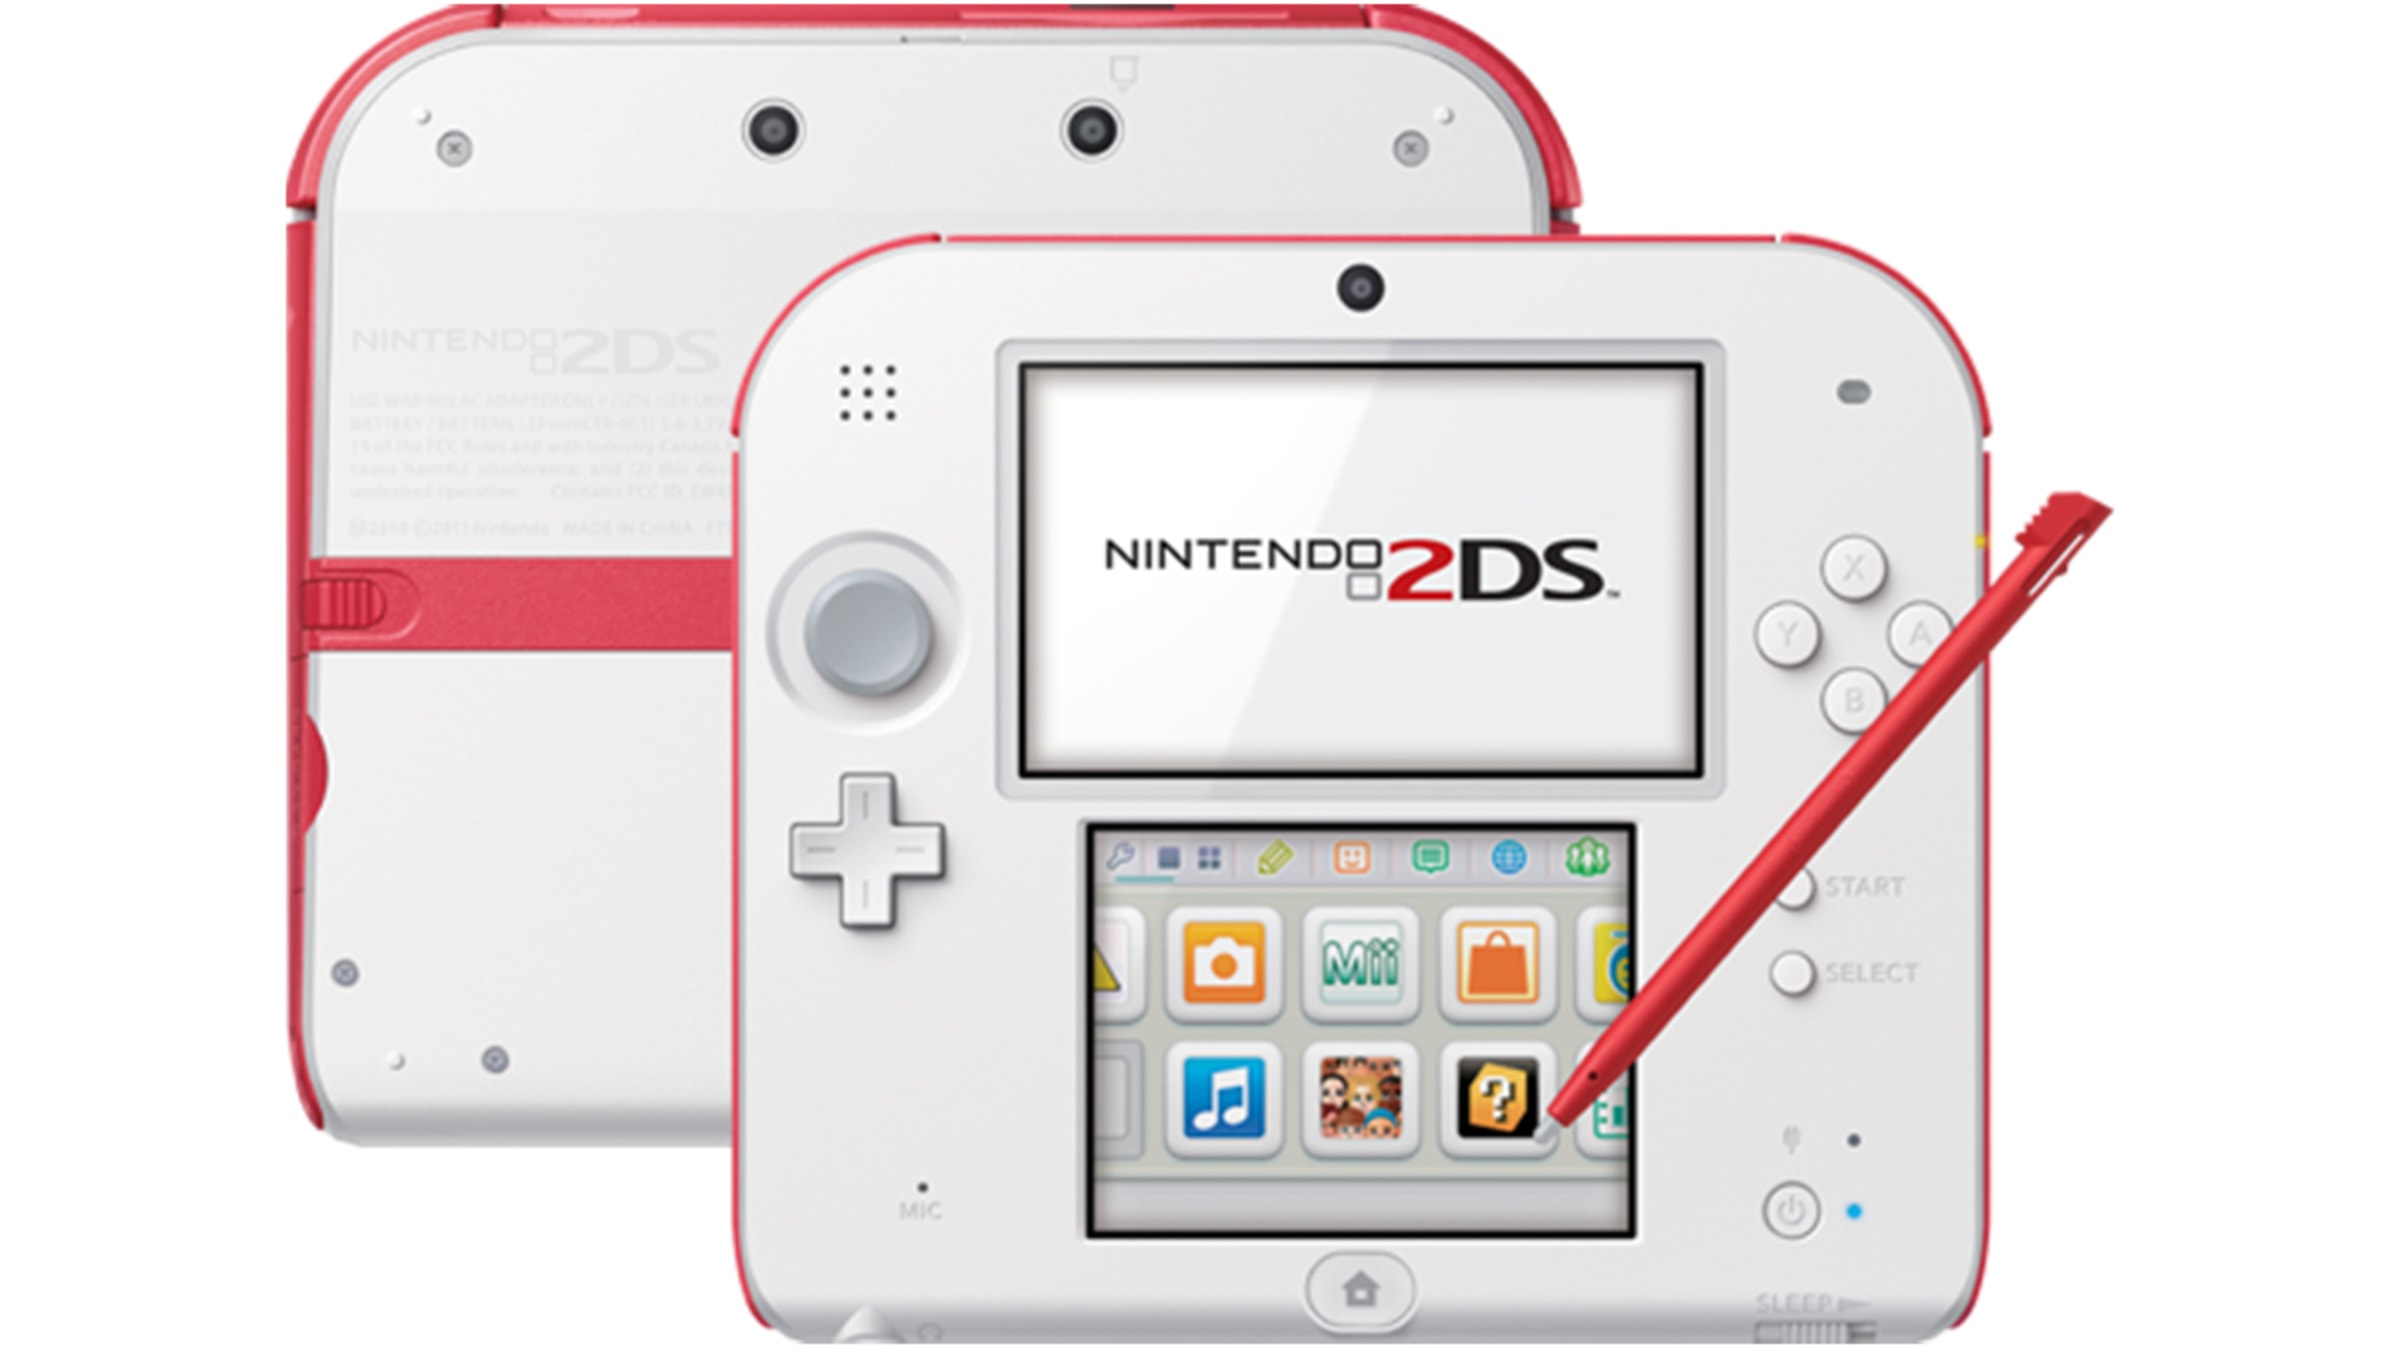 Nintendo 2DS - Scarlet Red - Refurbished - Nintendo Official Site